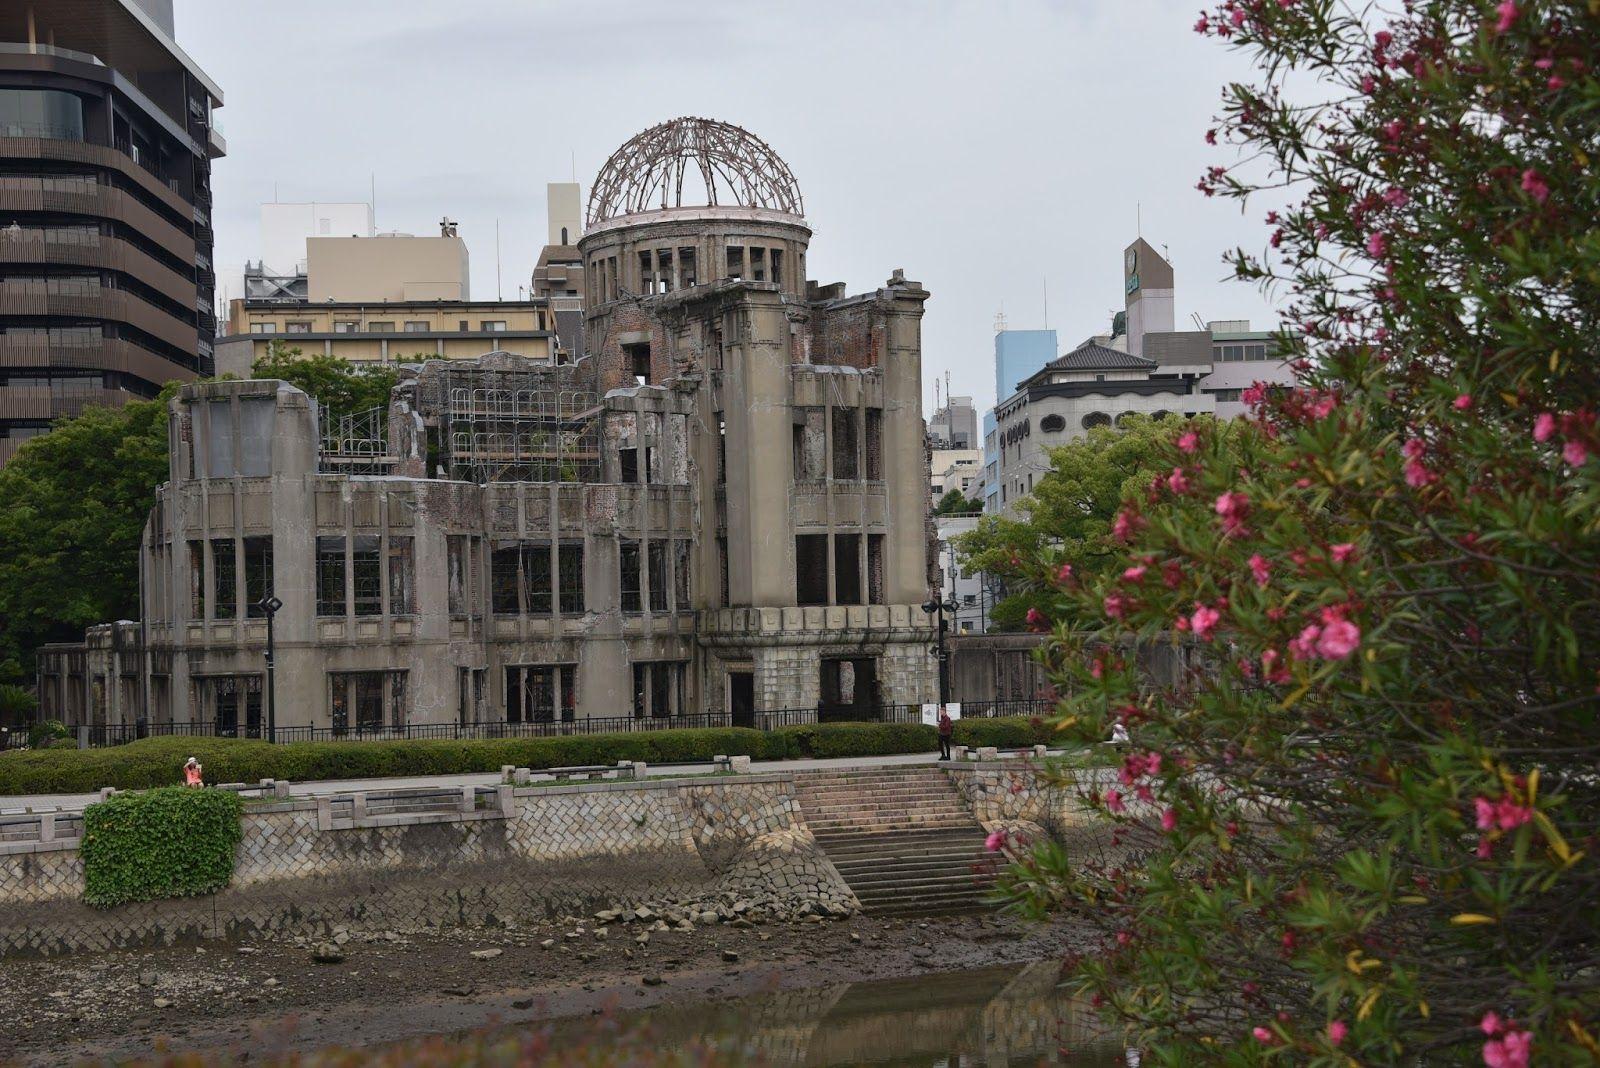 در جلوی تصویر گل خرزهره دیده می شود و در پشت یک ساختمان نیم سالم به جا مانده از حمله اتمی دیده می شود.